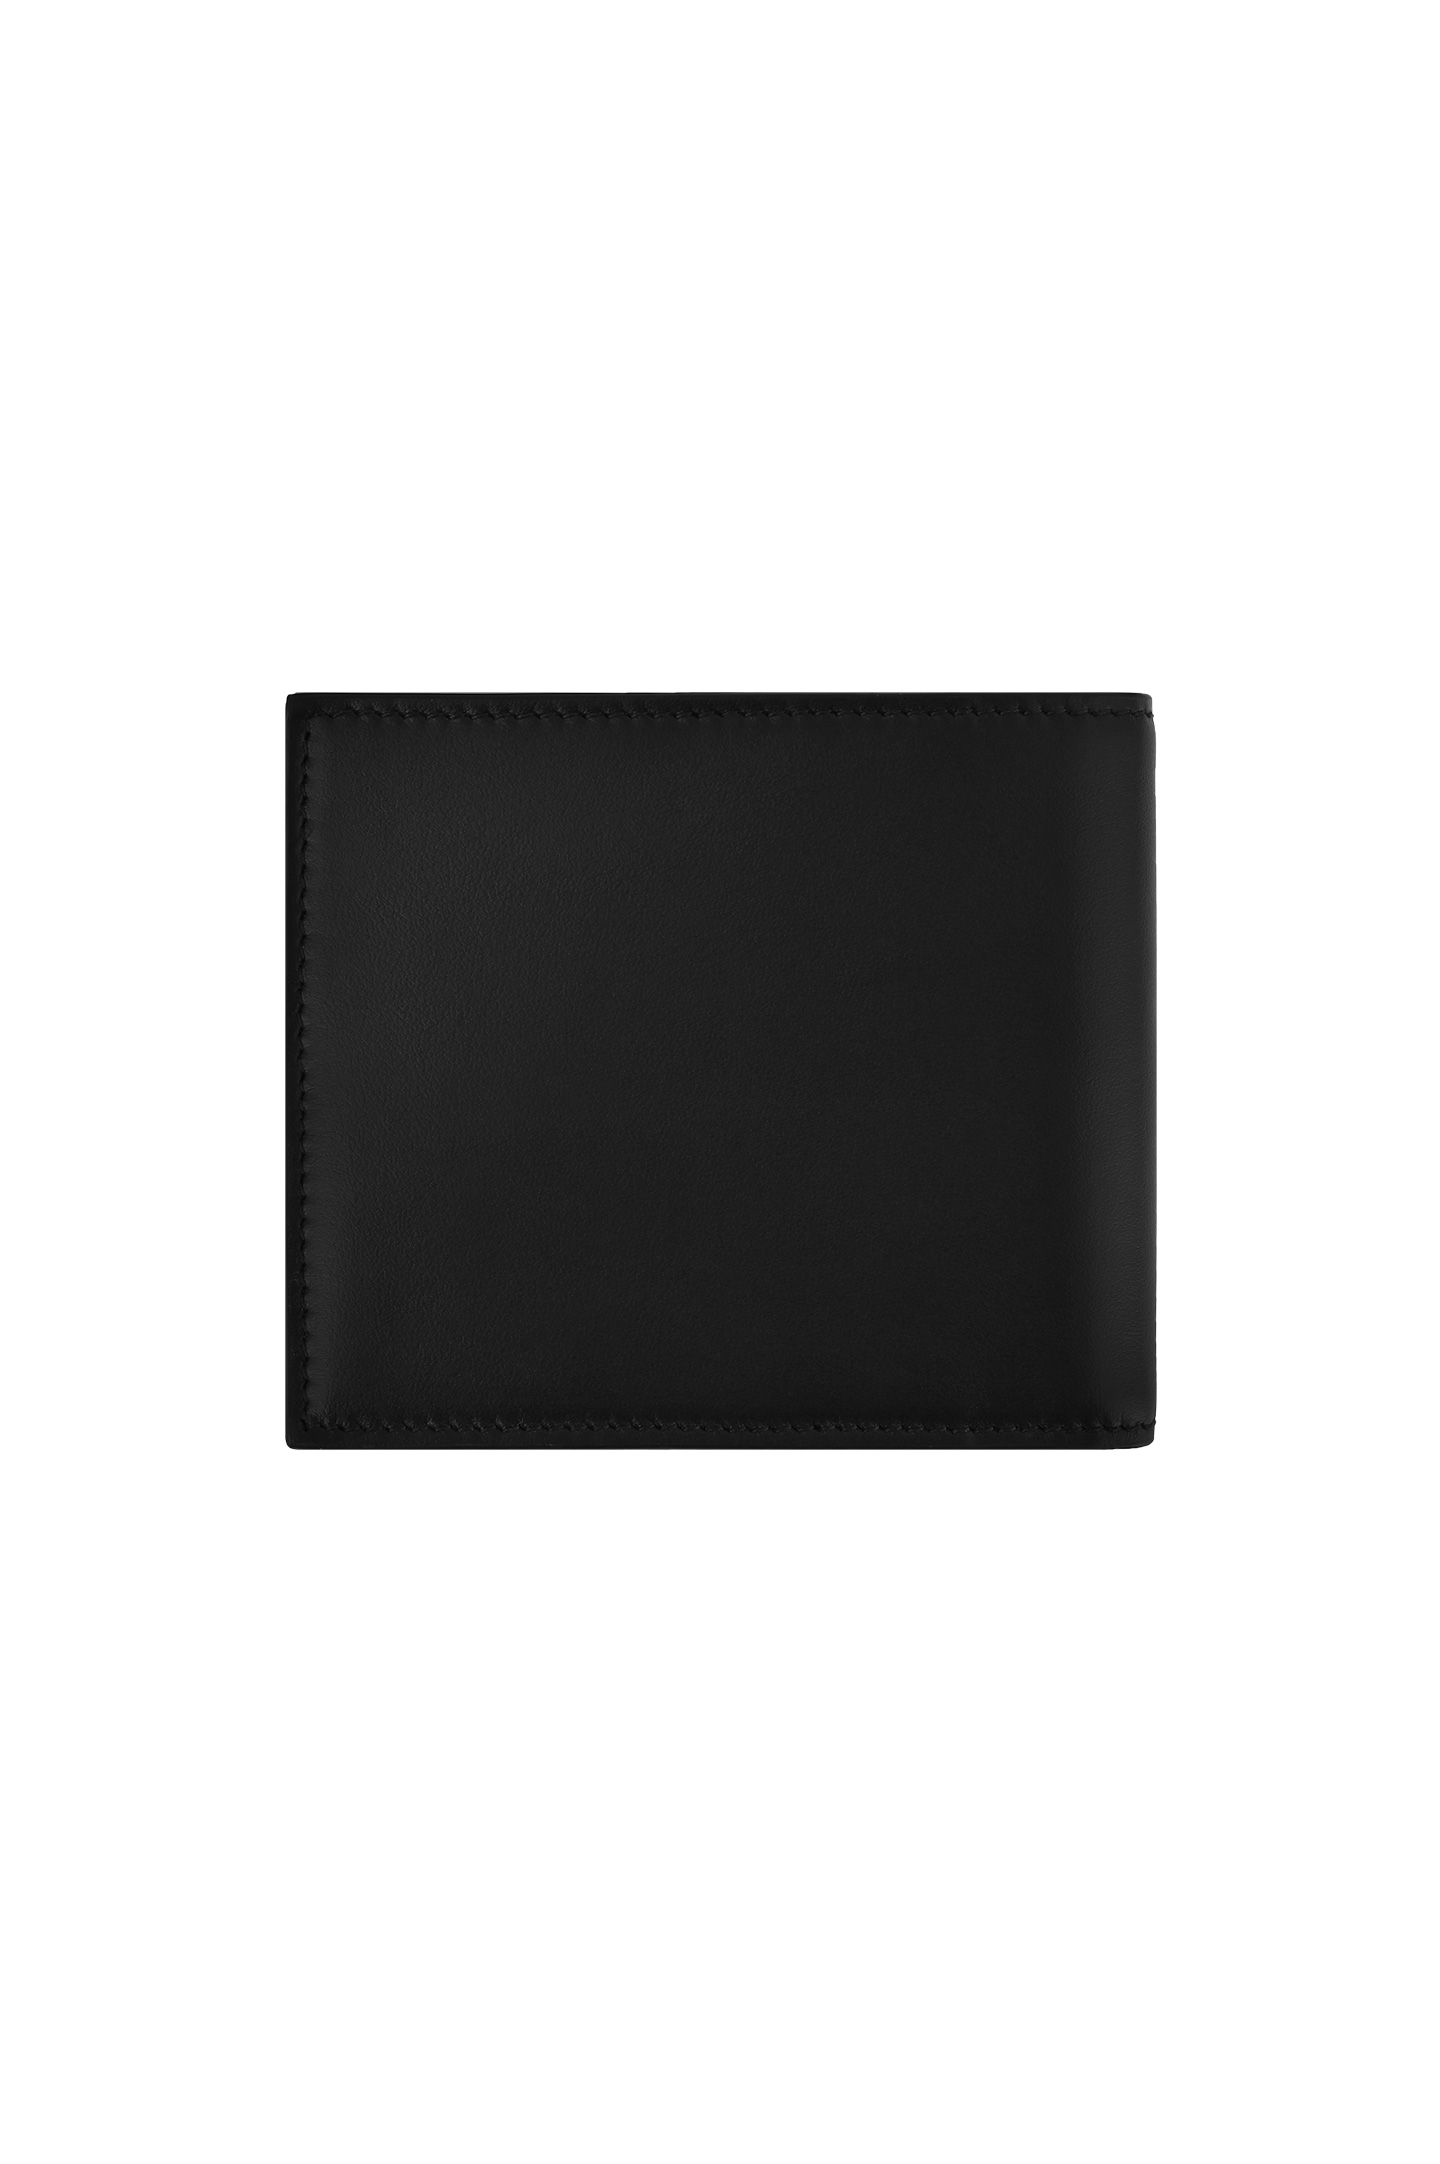 Портмоне DOLCE & GABBANA BP1321 AN244, цвет: Черный, Мужской